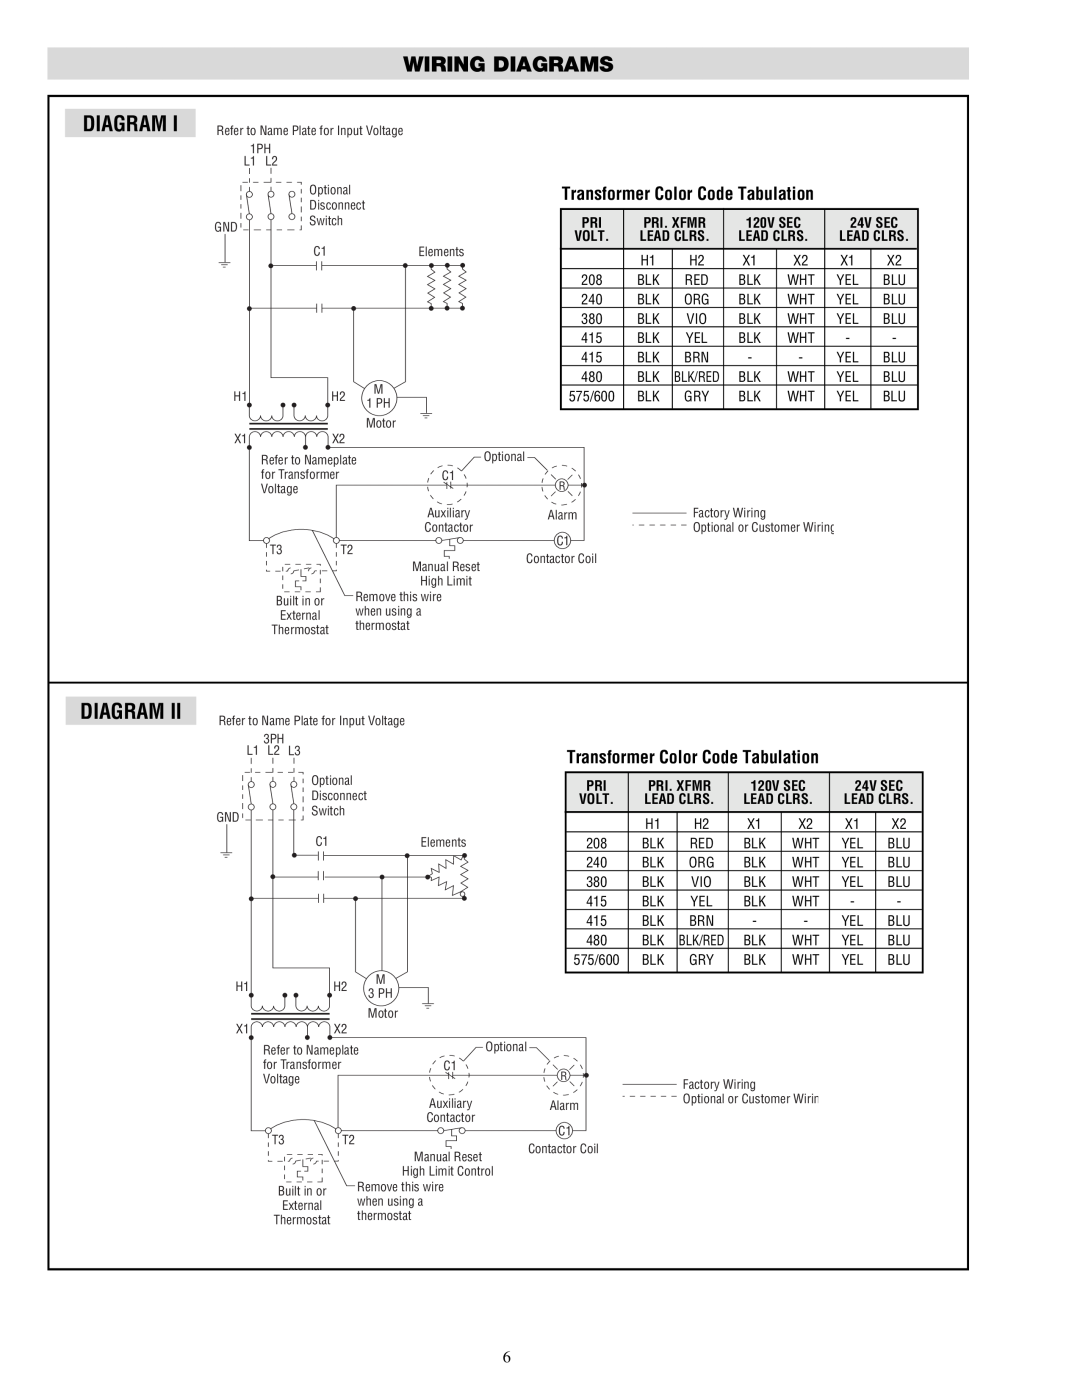 Chromalox PF490-5 Wiring Diagrams, Transformer Color Code Tabulation, Pri. Xfmr, 24V SEC, Lead Clrs, 120V SEC 